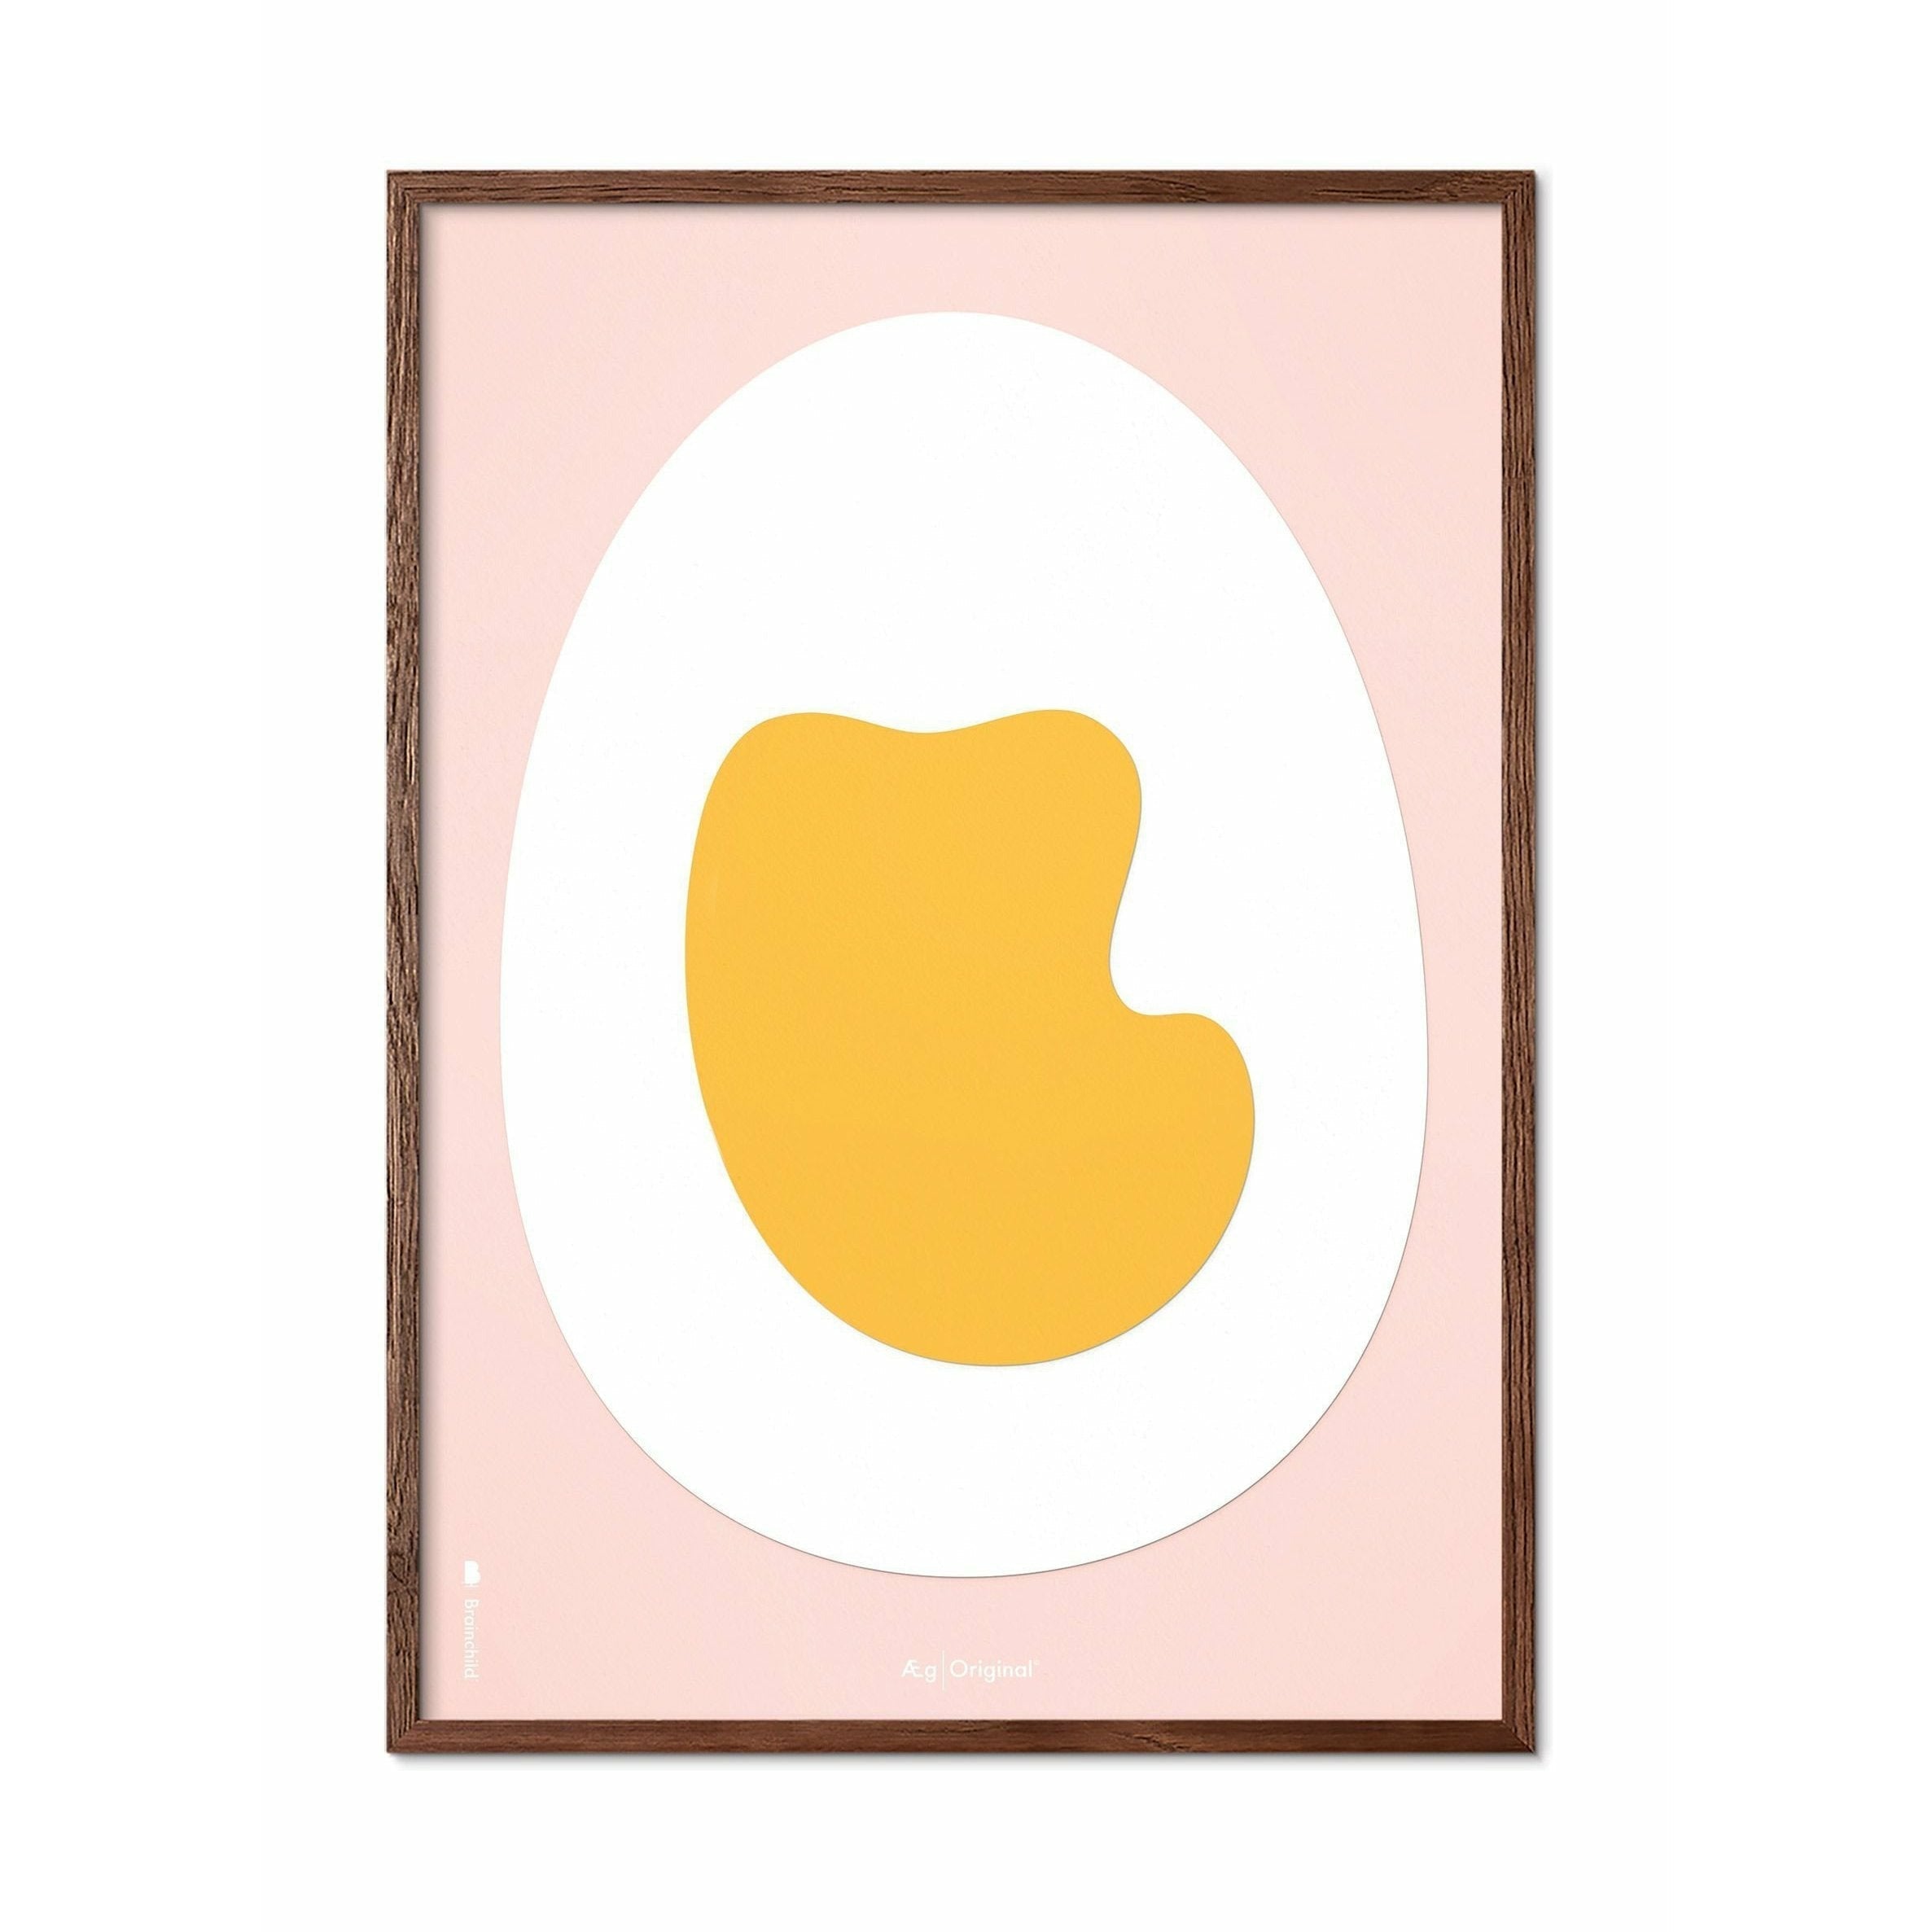 Póster de clip de papel de huevo de creación, marco de madera oscura A5, fondo rosado